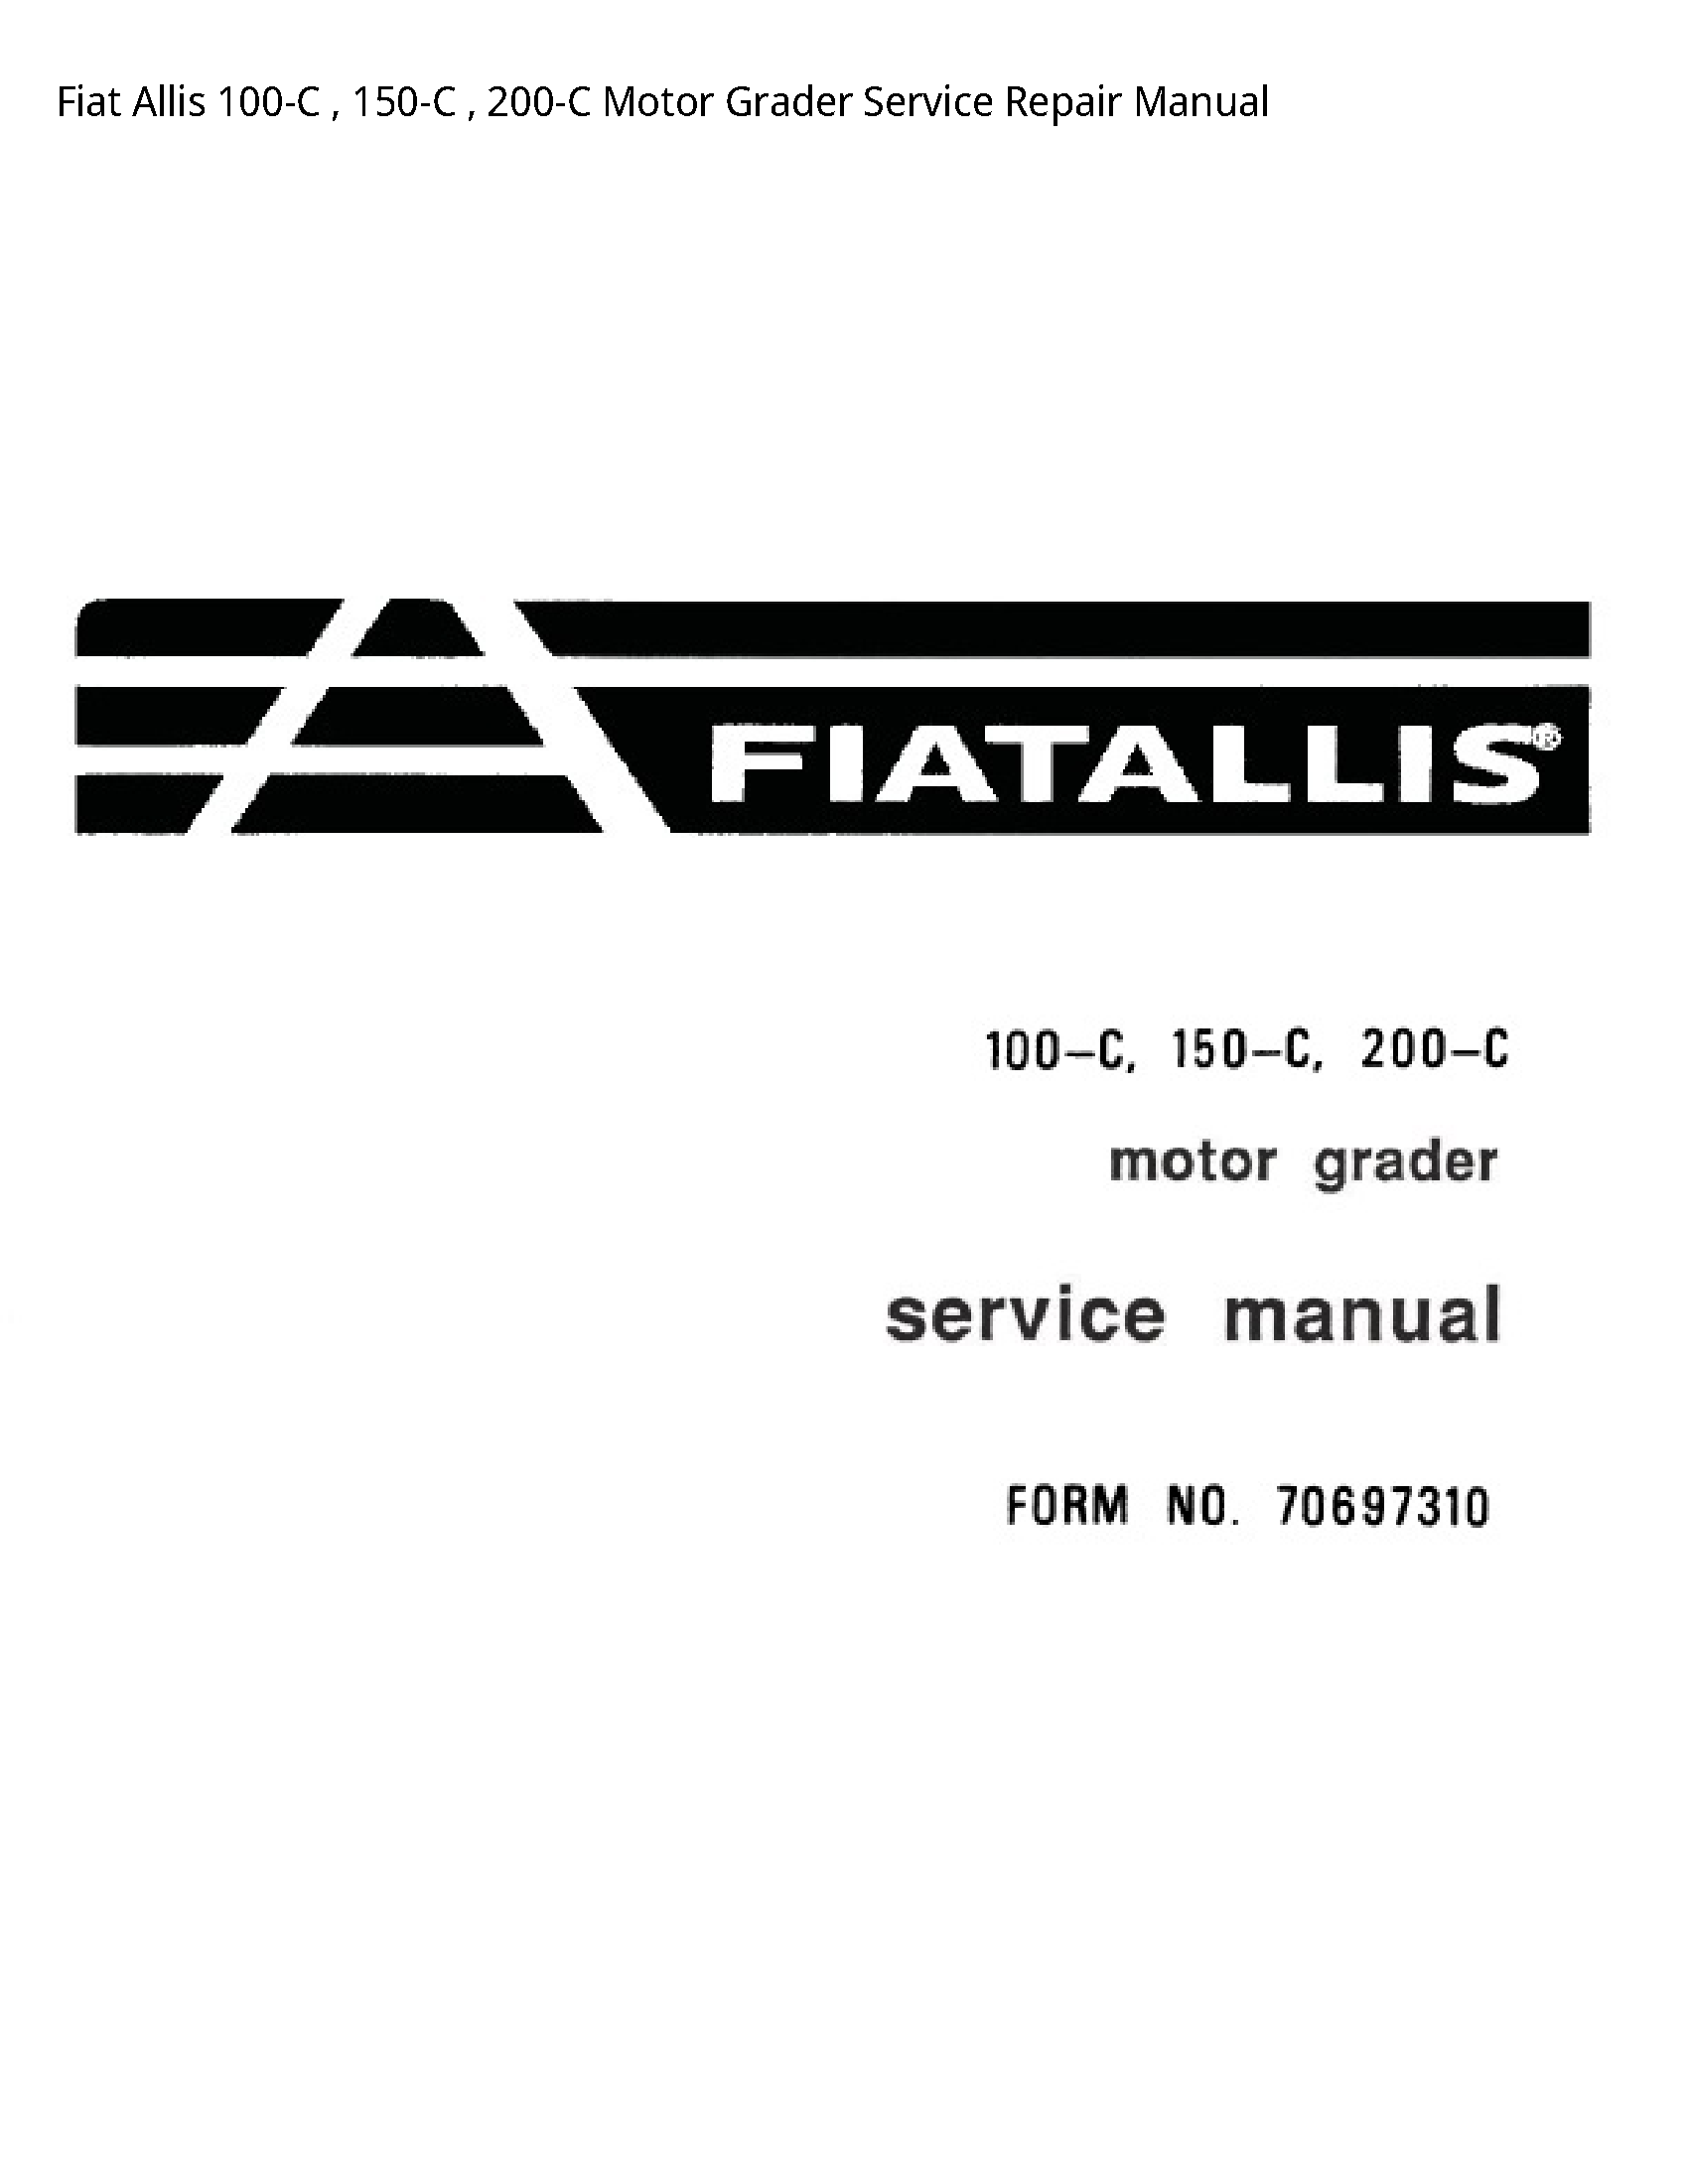 Fiat Allis 100-C Motor Grader manual